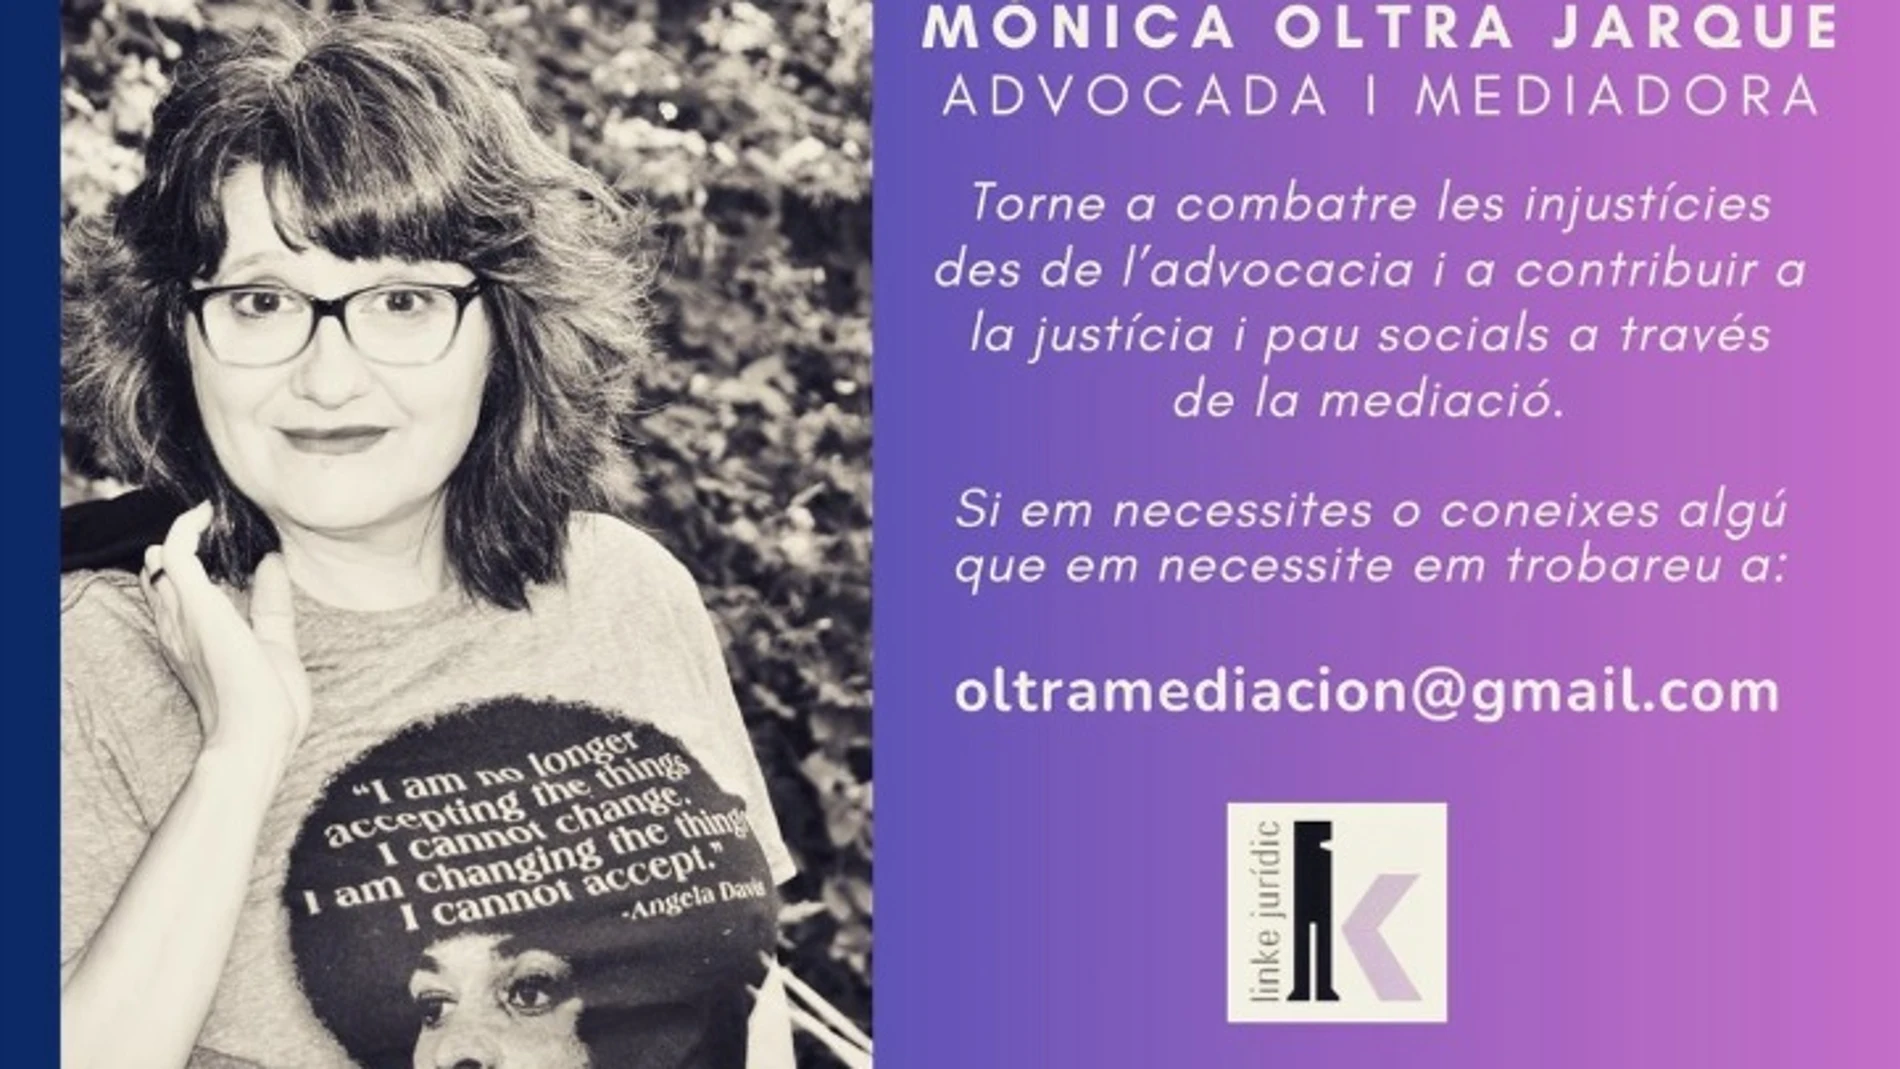 Imagen difundida por Mónica Oltra para anunciar su vuelta a la abogacía @MONICAOLTRA_ 26/10/2023